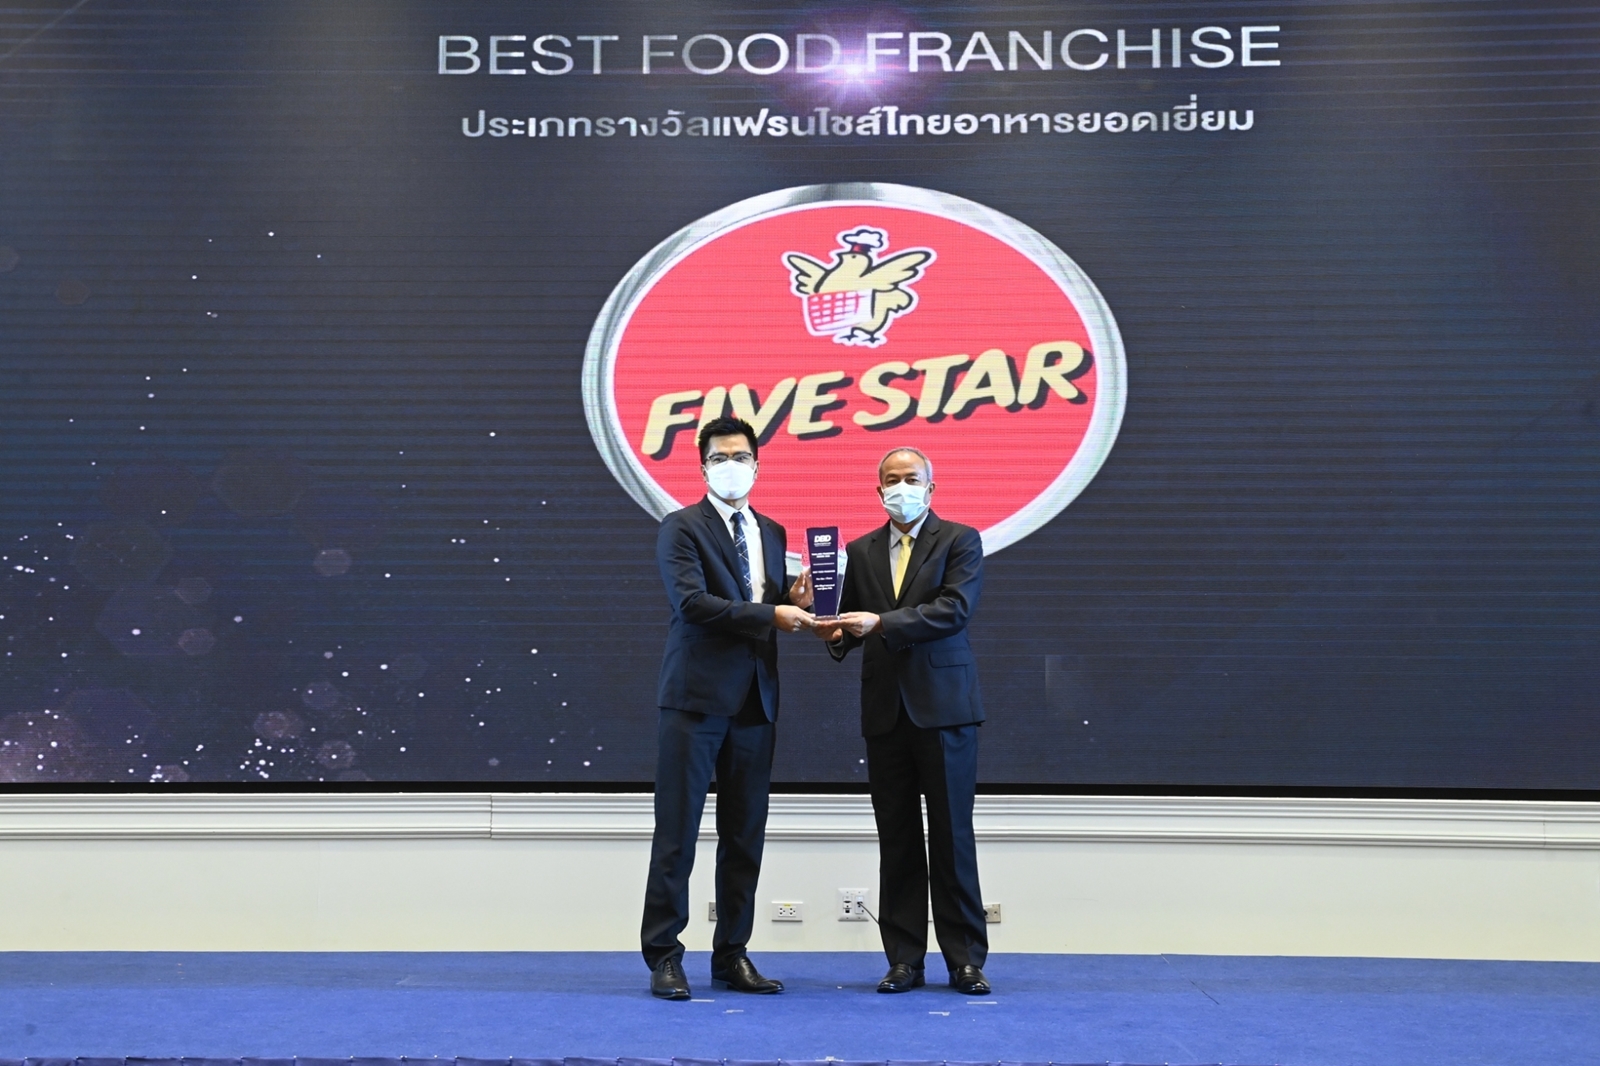 ธุรกิจห้าดาว คว้ารางวัล BEST FOOD FRANCHISE ปี 2022 ตอกย้ำ! ผู้นำธุรกิจแฟรนไชส์ให้คนไทยเป็นเถ้าแก่มีรายได้มั่นคง